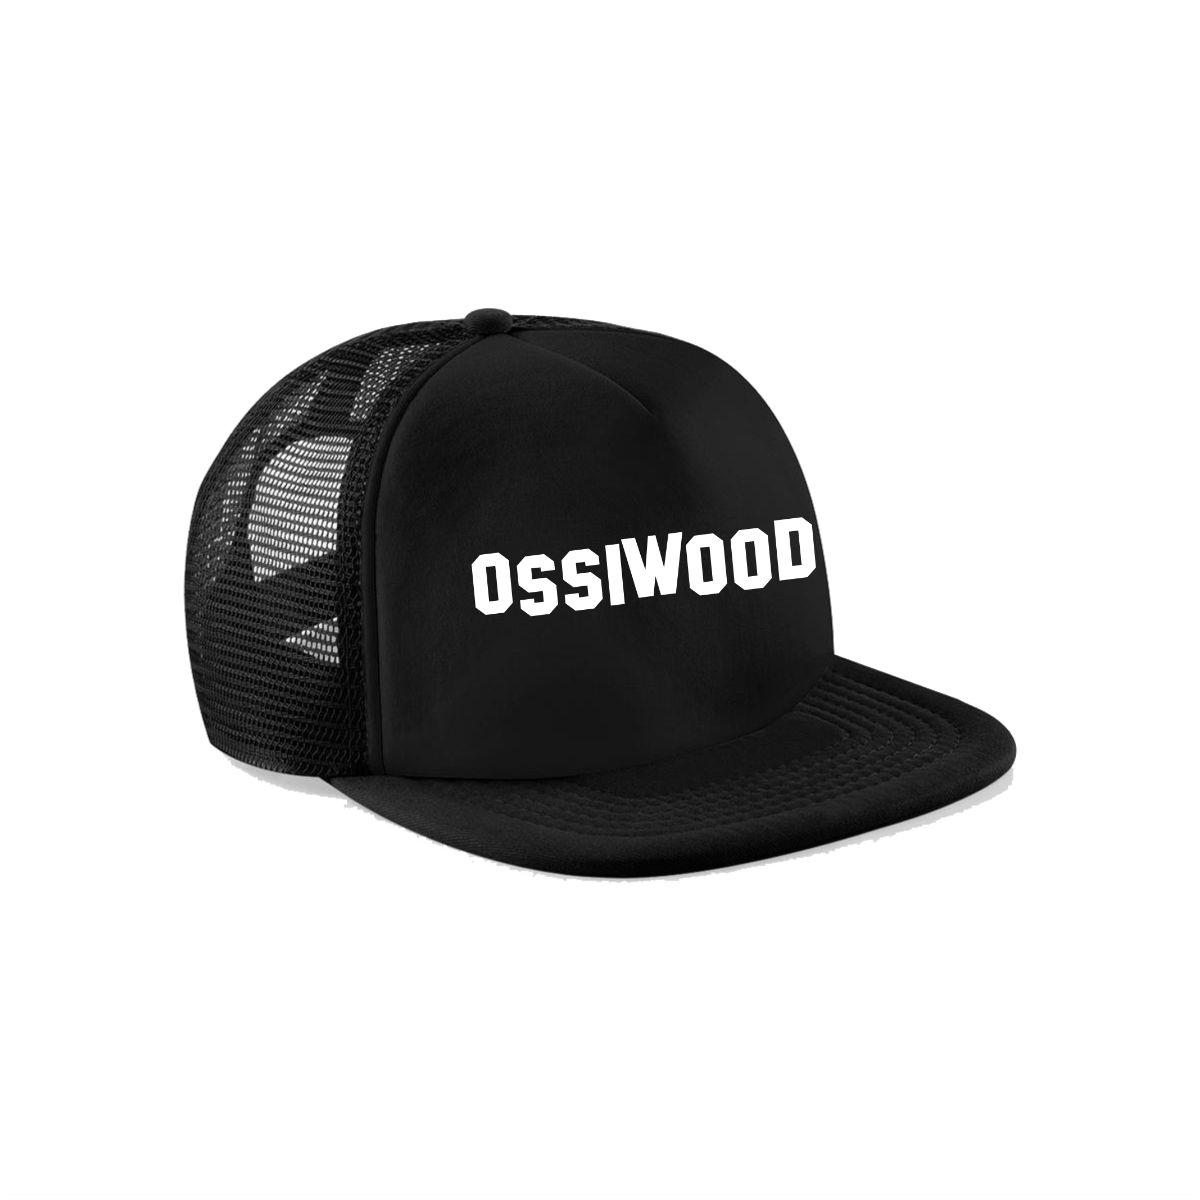 Cap "OSSIWOOD" schwarz